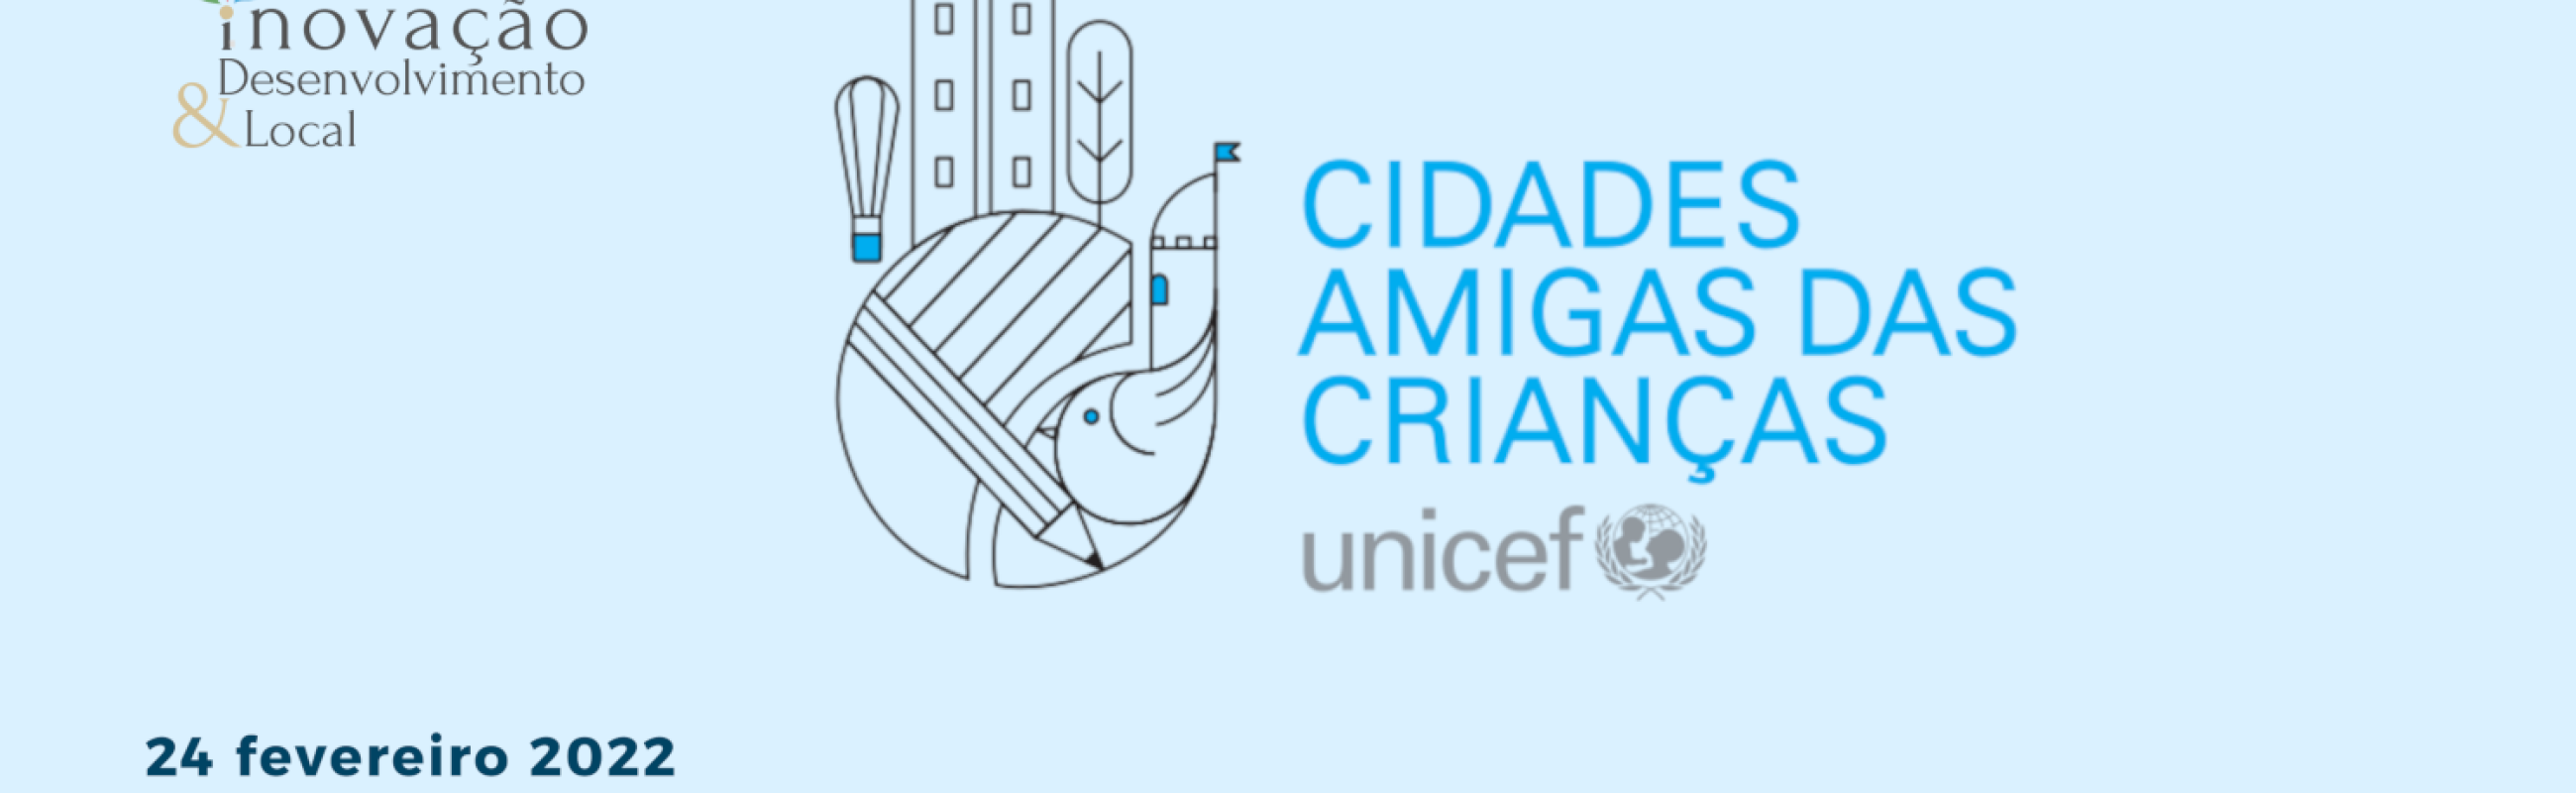 O programa das Cidades das Amigas das Crianças da UNICEF no IDL do CESOP-Local